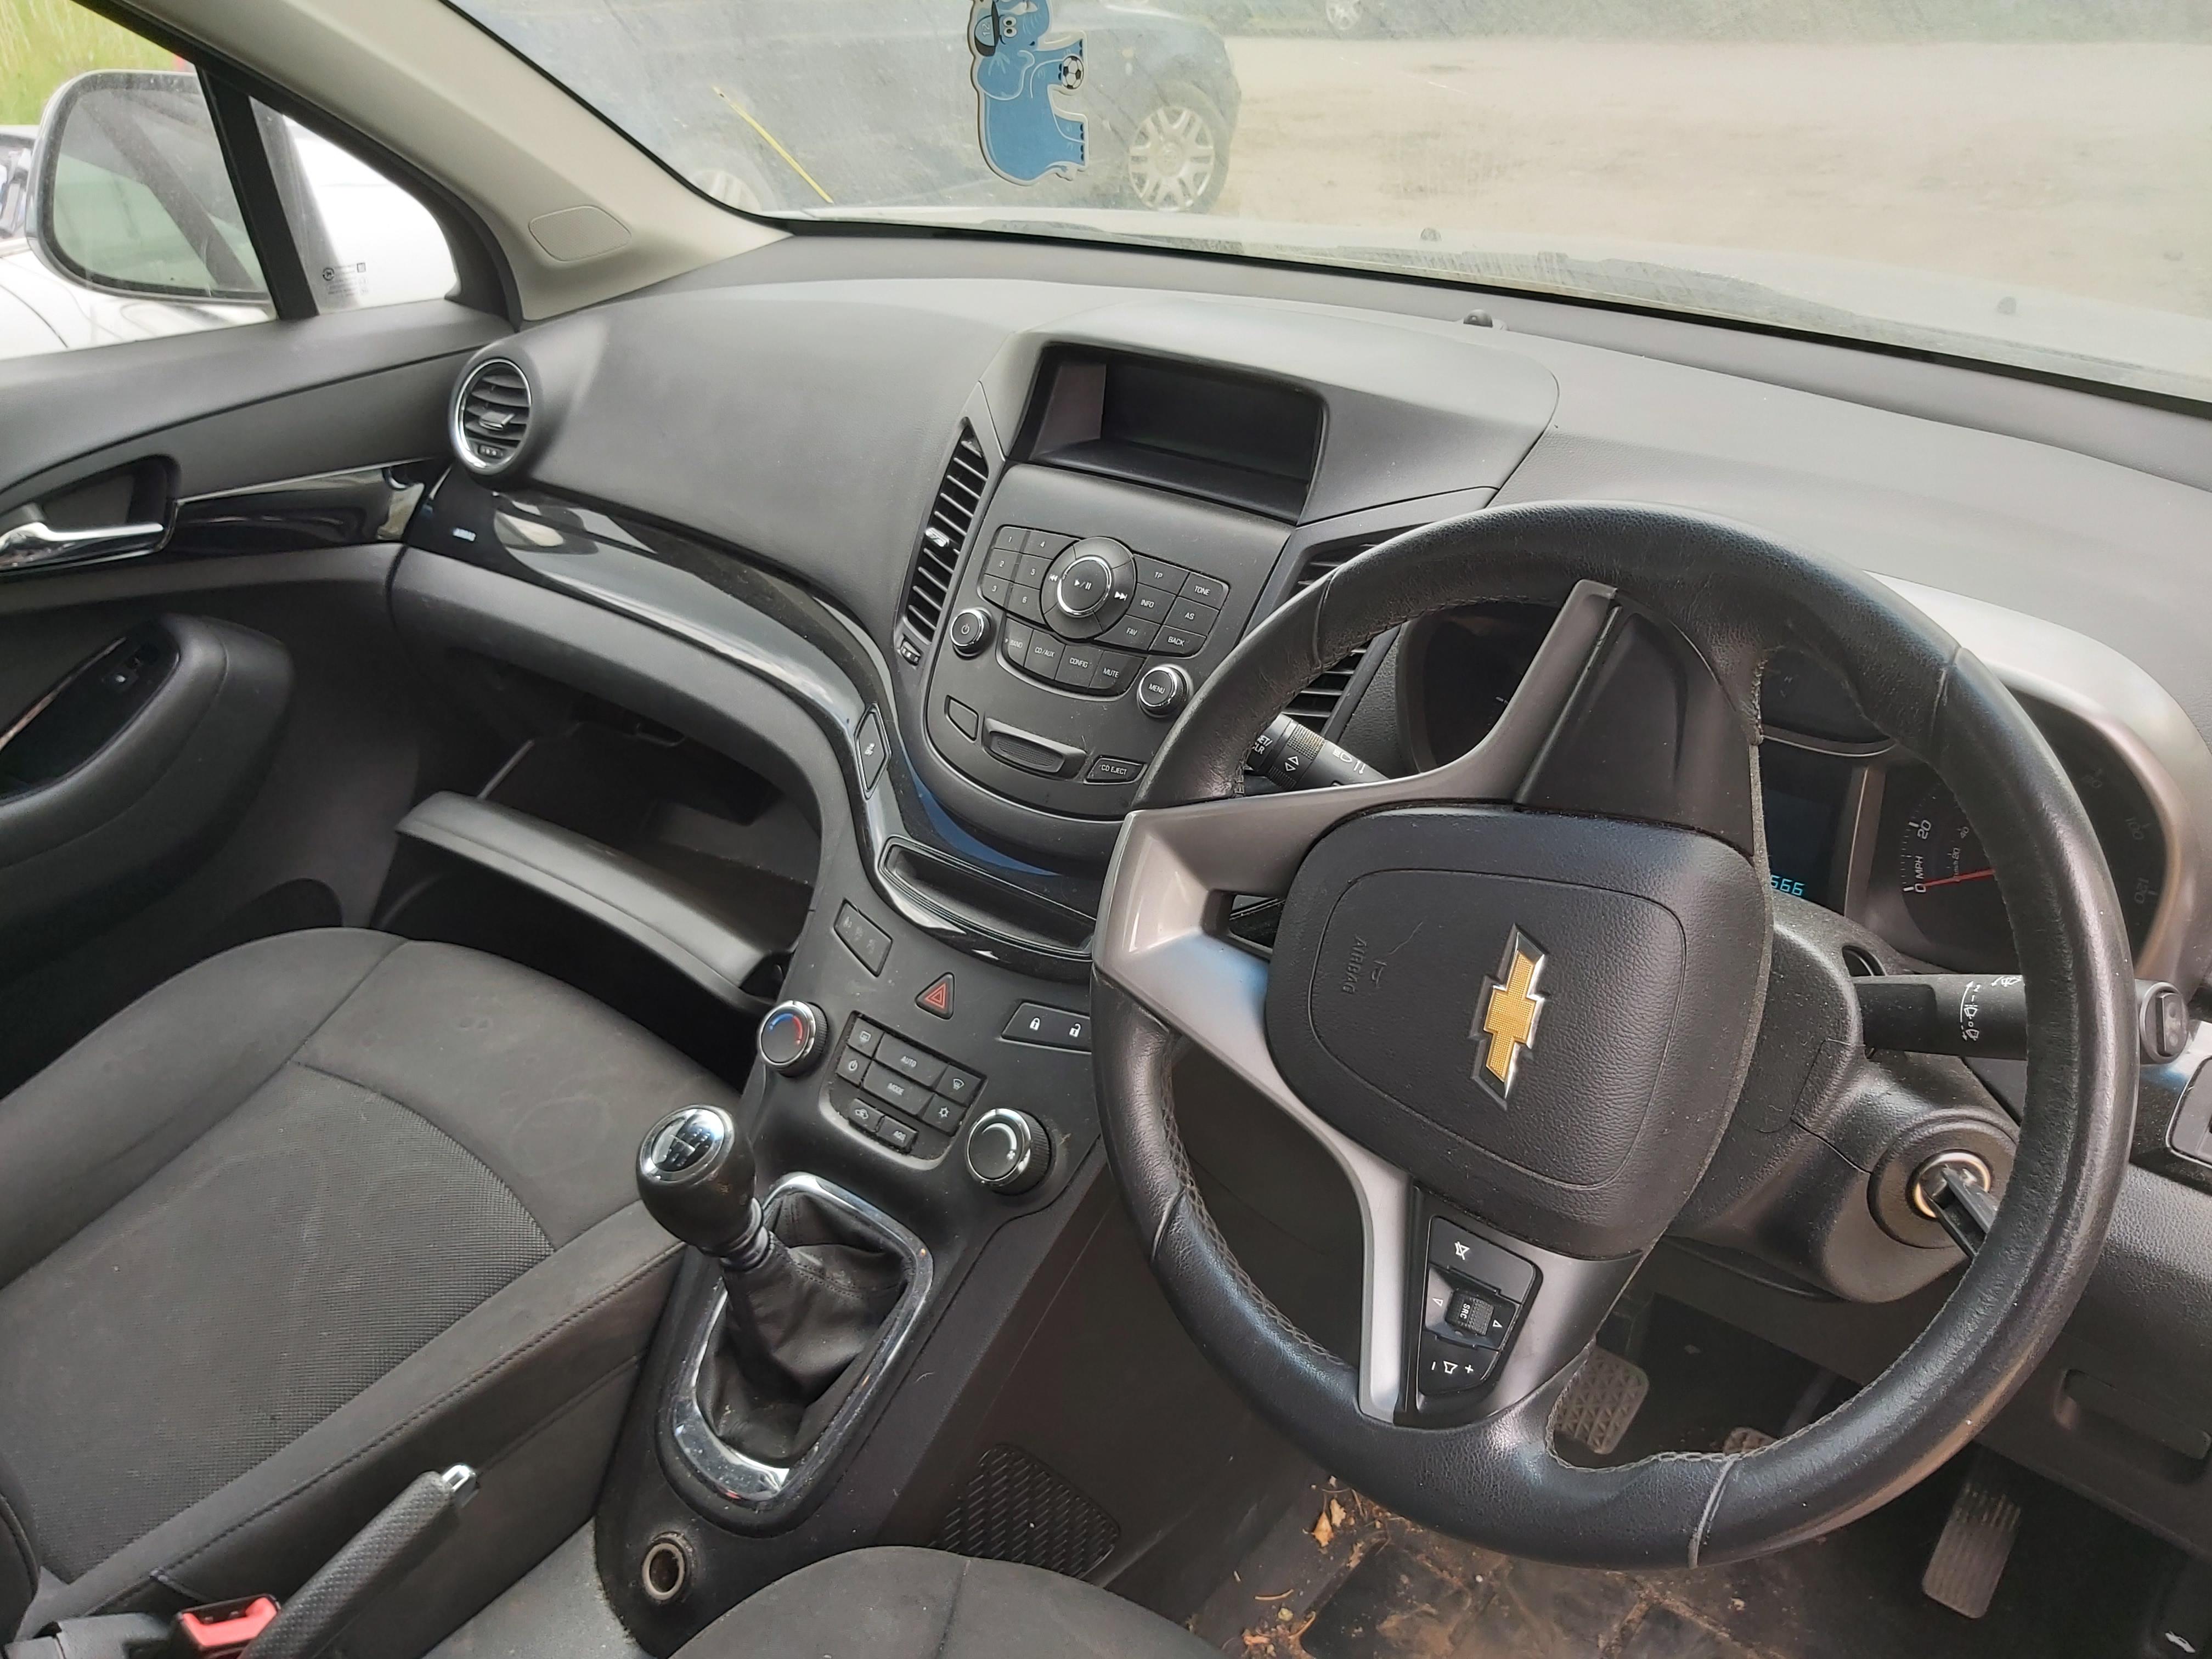 Подержанные Автозапчасти Chevrolet ORLANDO 2012 2.0 машиностроение минивэн 4/5 d. Серый 2020-5-26